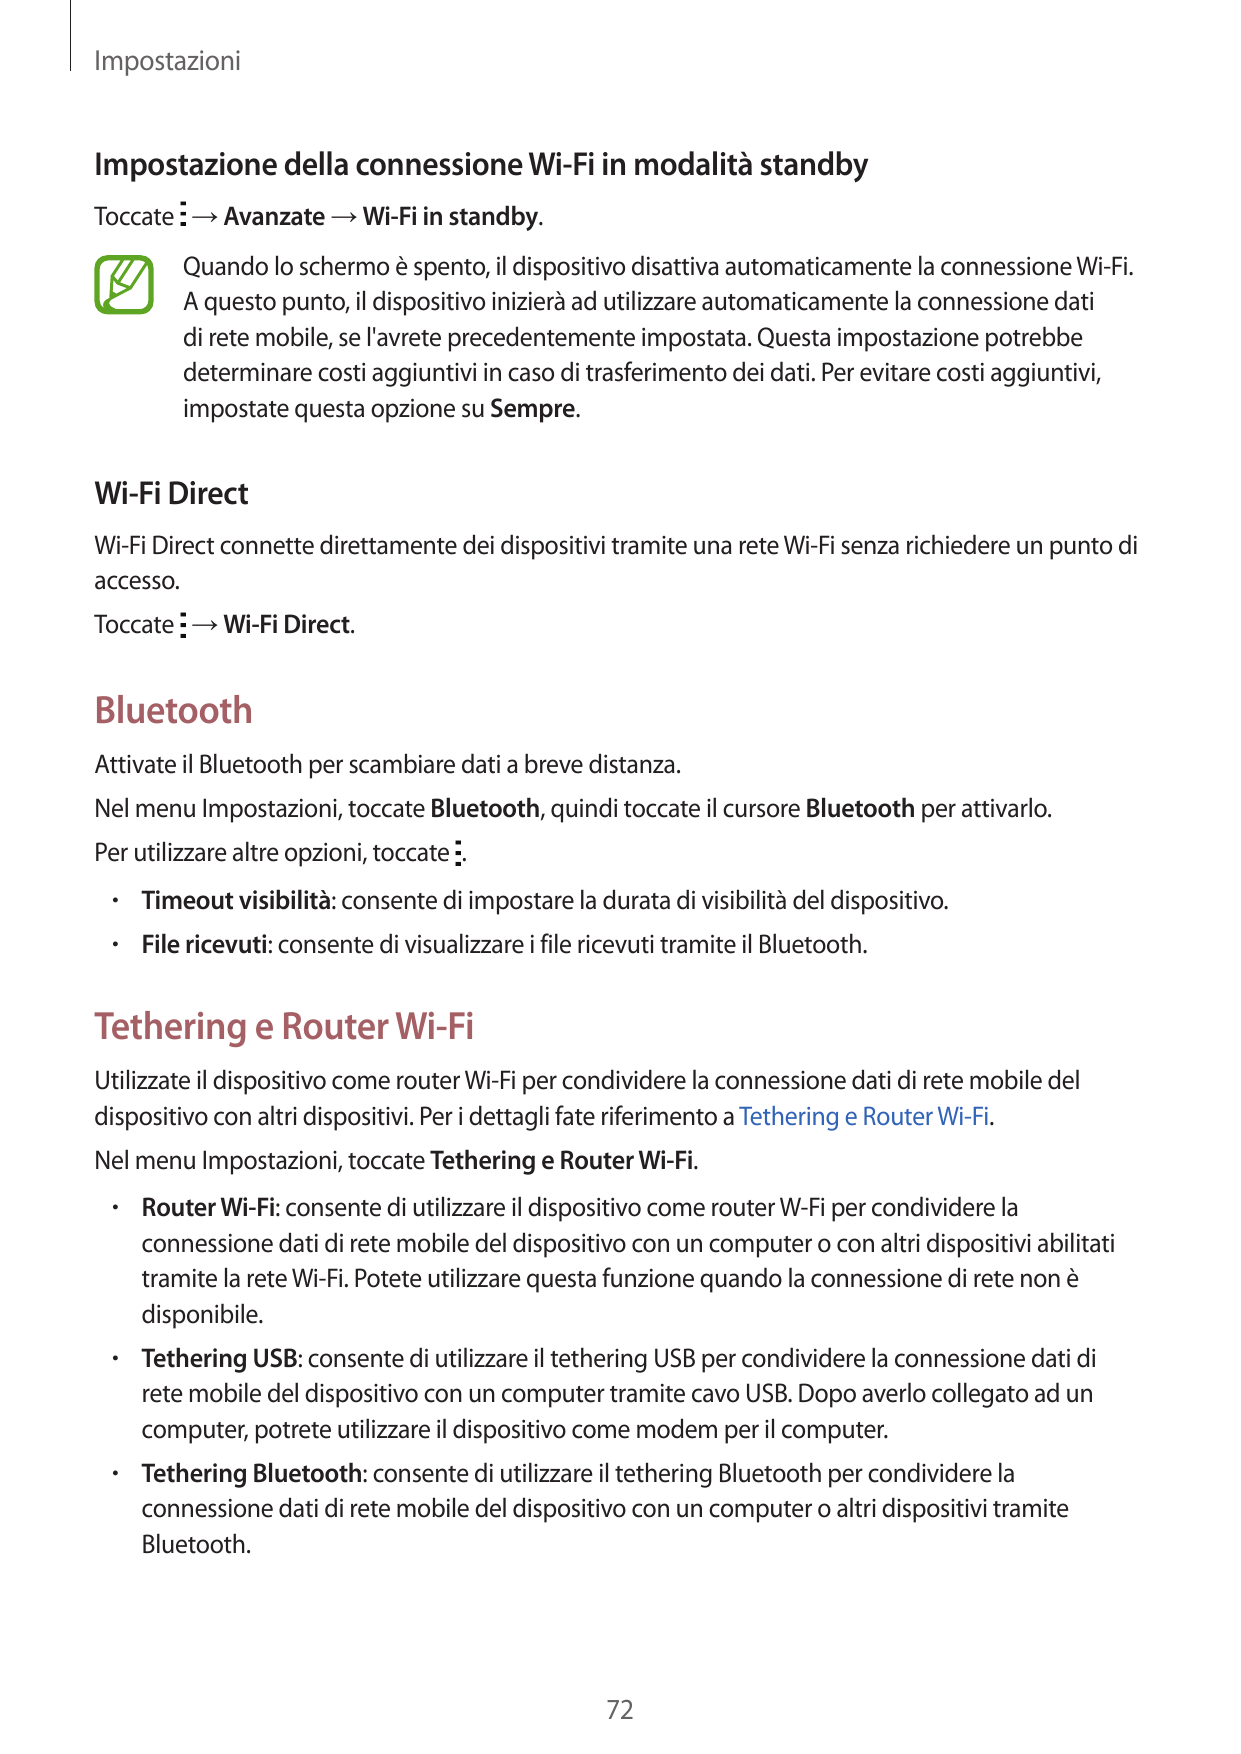 ImpostazioniImpostazione della connessione Wi-Fi in modalità standbyToccate → Avanzate → Wi-Fi in standby.Quando lo schermo è sp